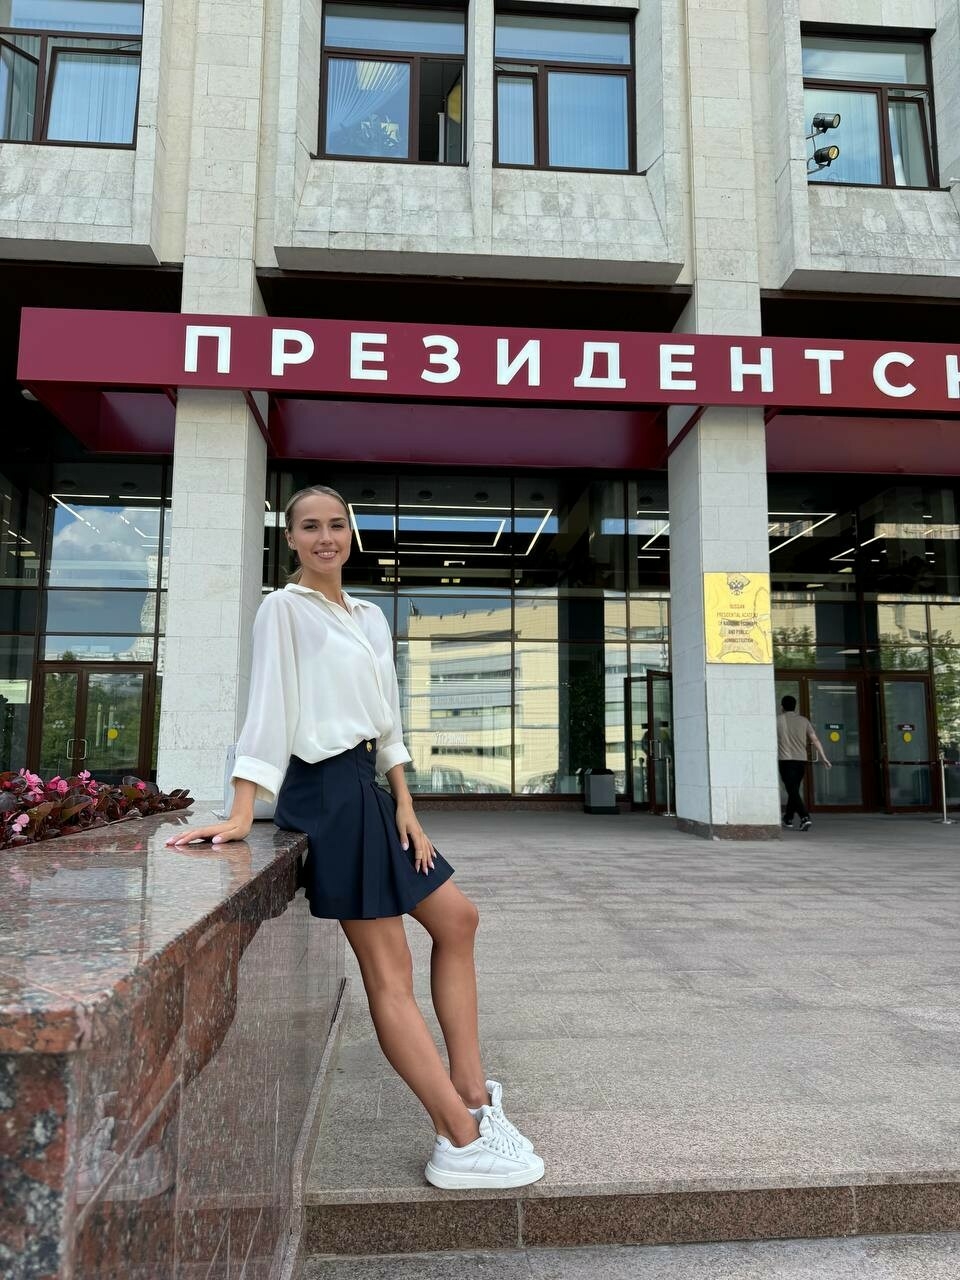 Алина Загитова поделилась итогами госэкзамена в университете